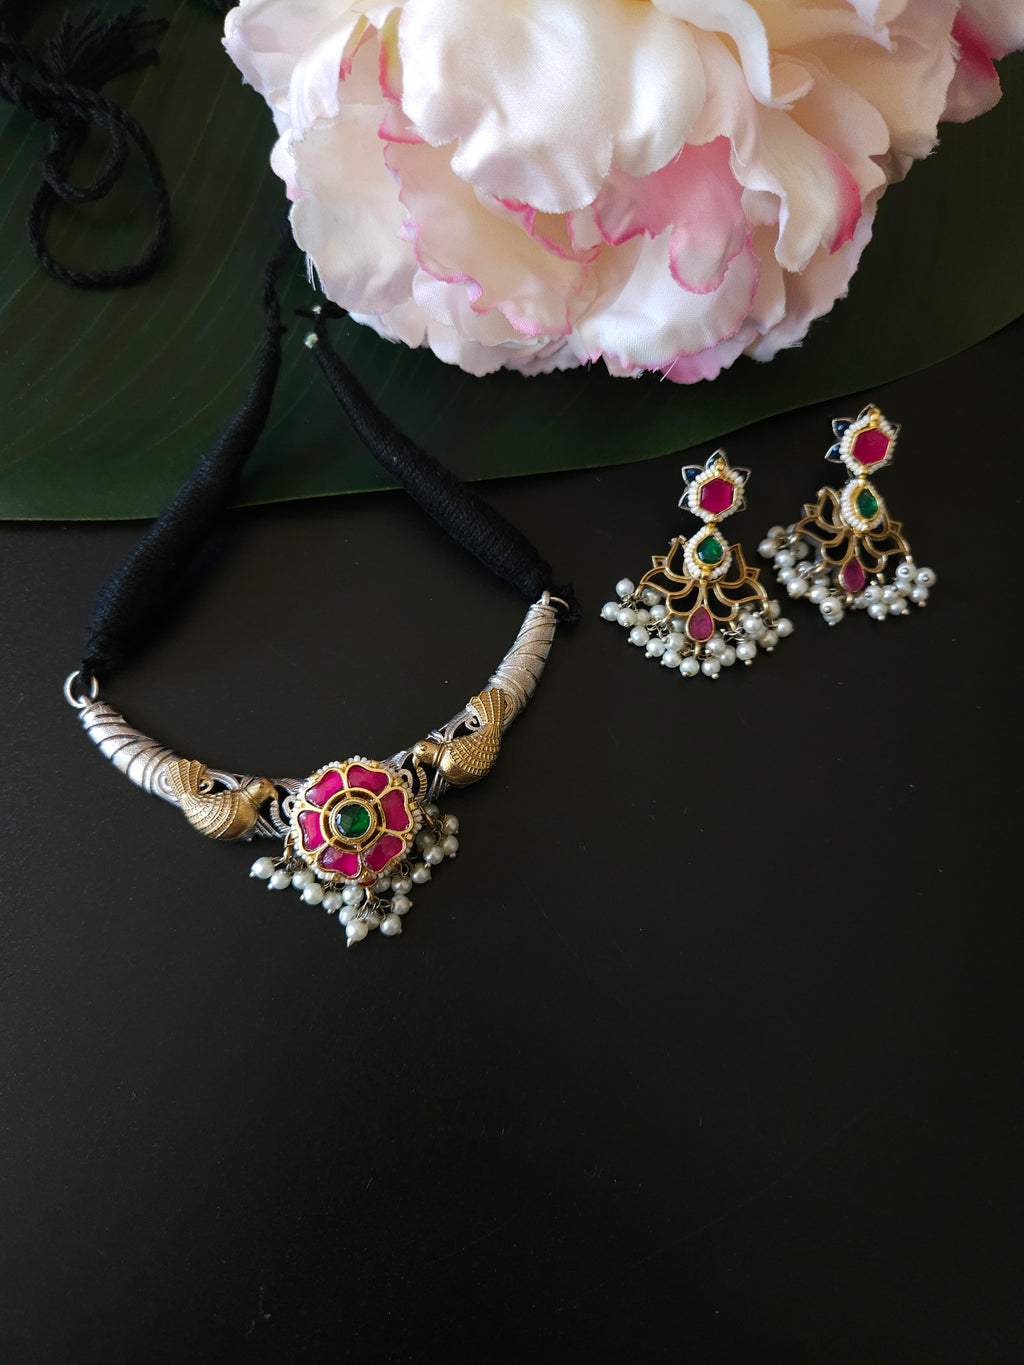 Aanshi fusion necklace set